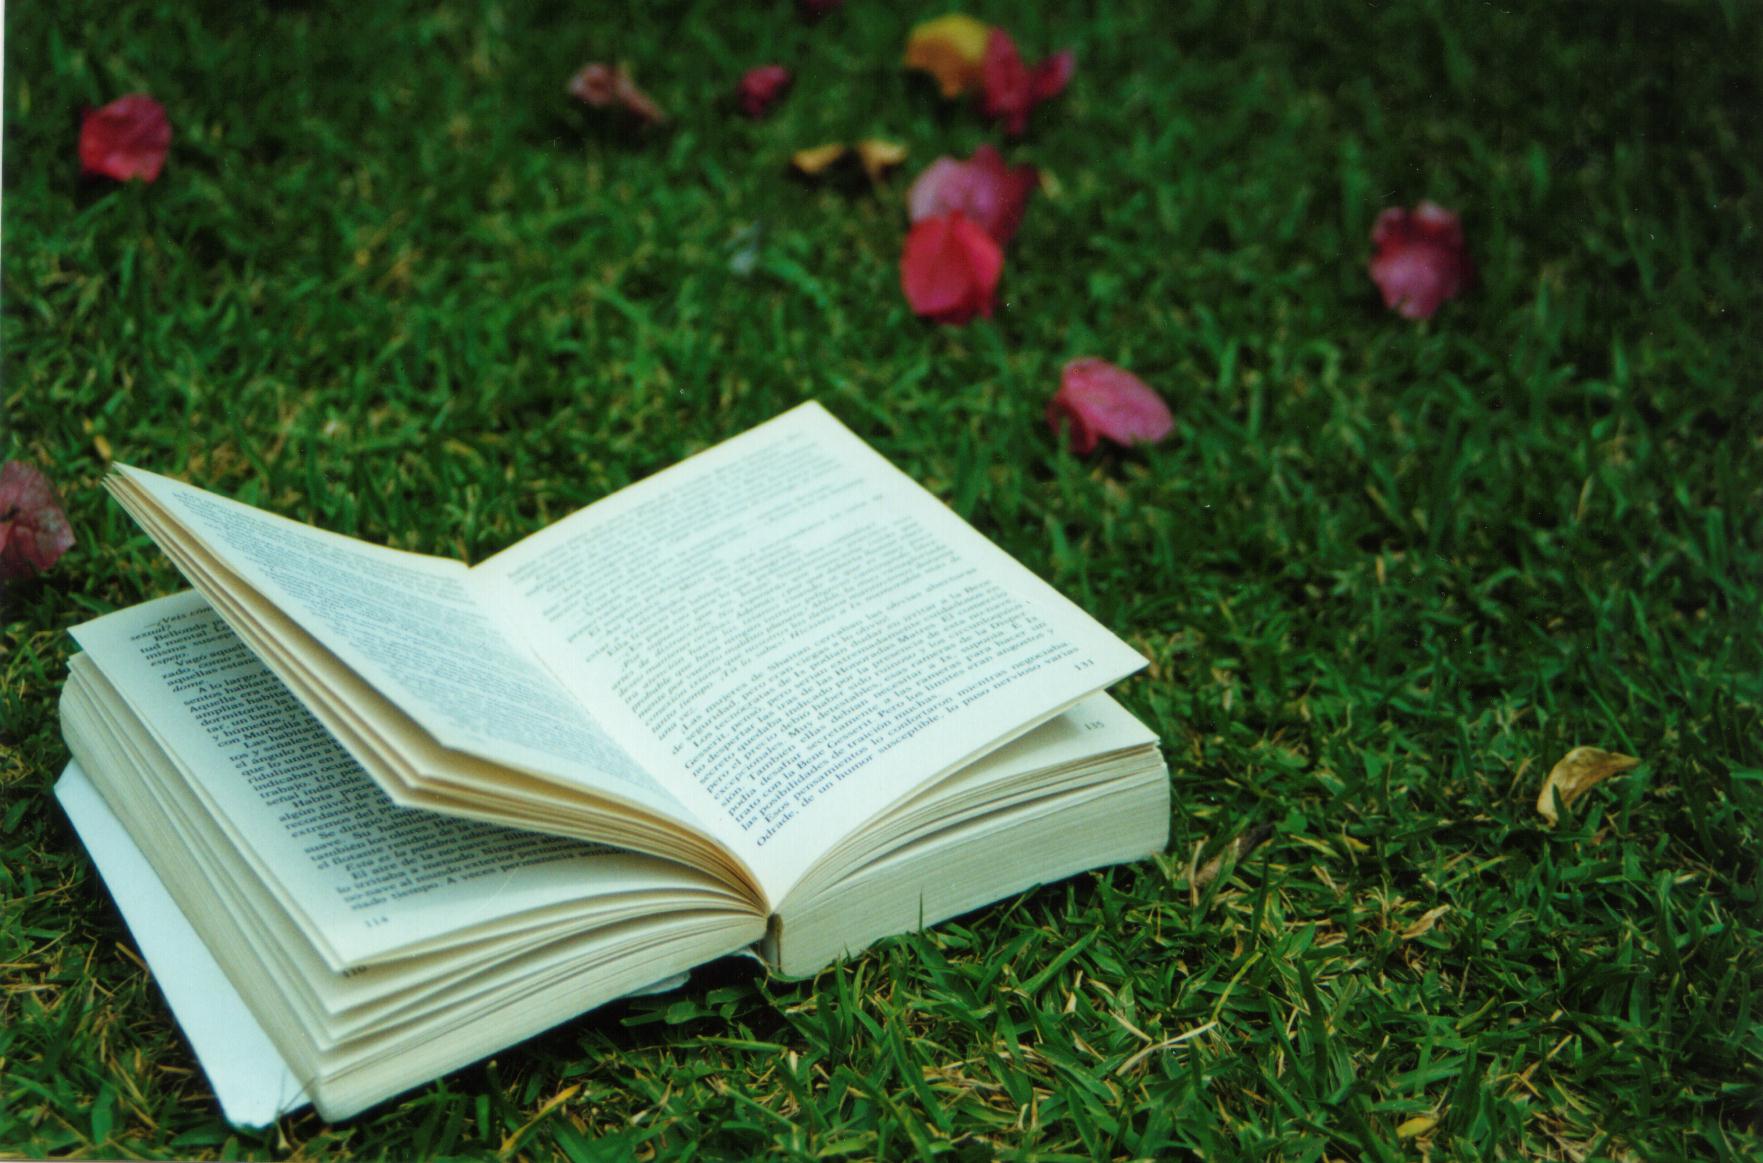 book on grass